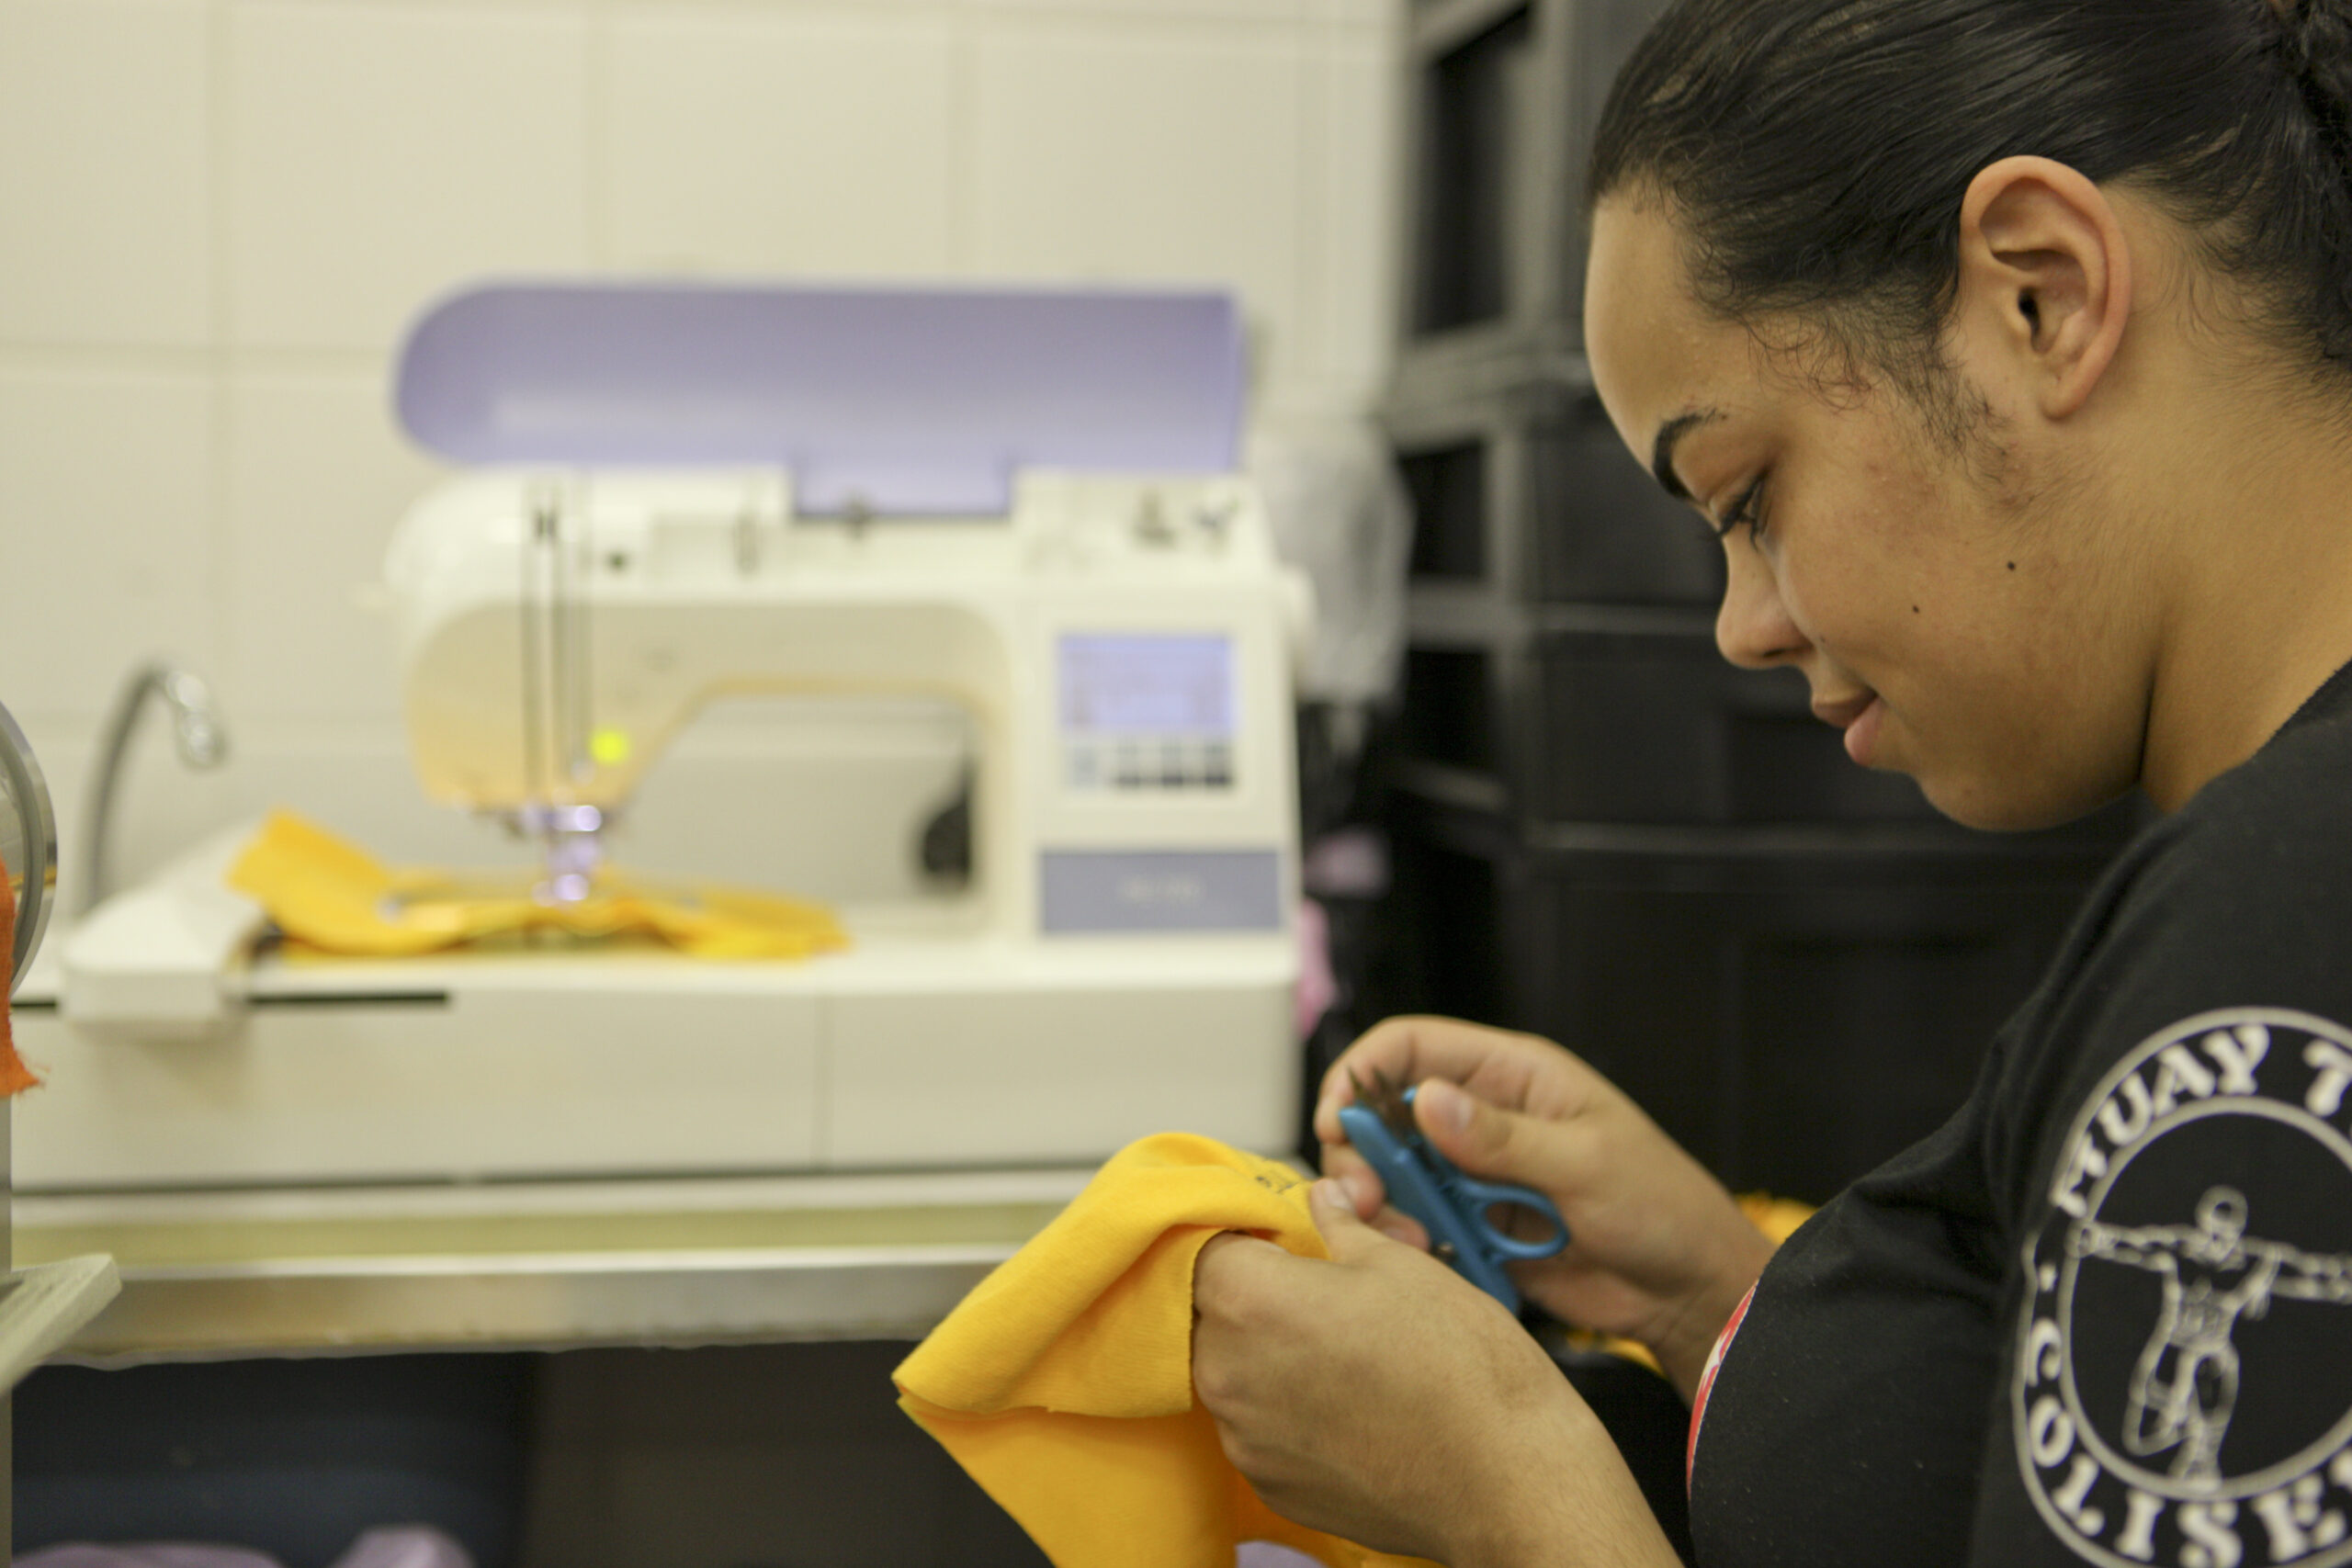 Foto de uma mulher jovem segurando uma tesoura e um tecido nas mãos. Ao lado dela, há uma máquina de costura.